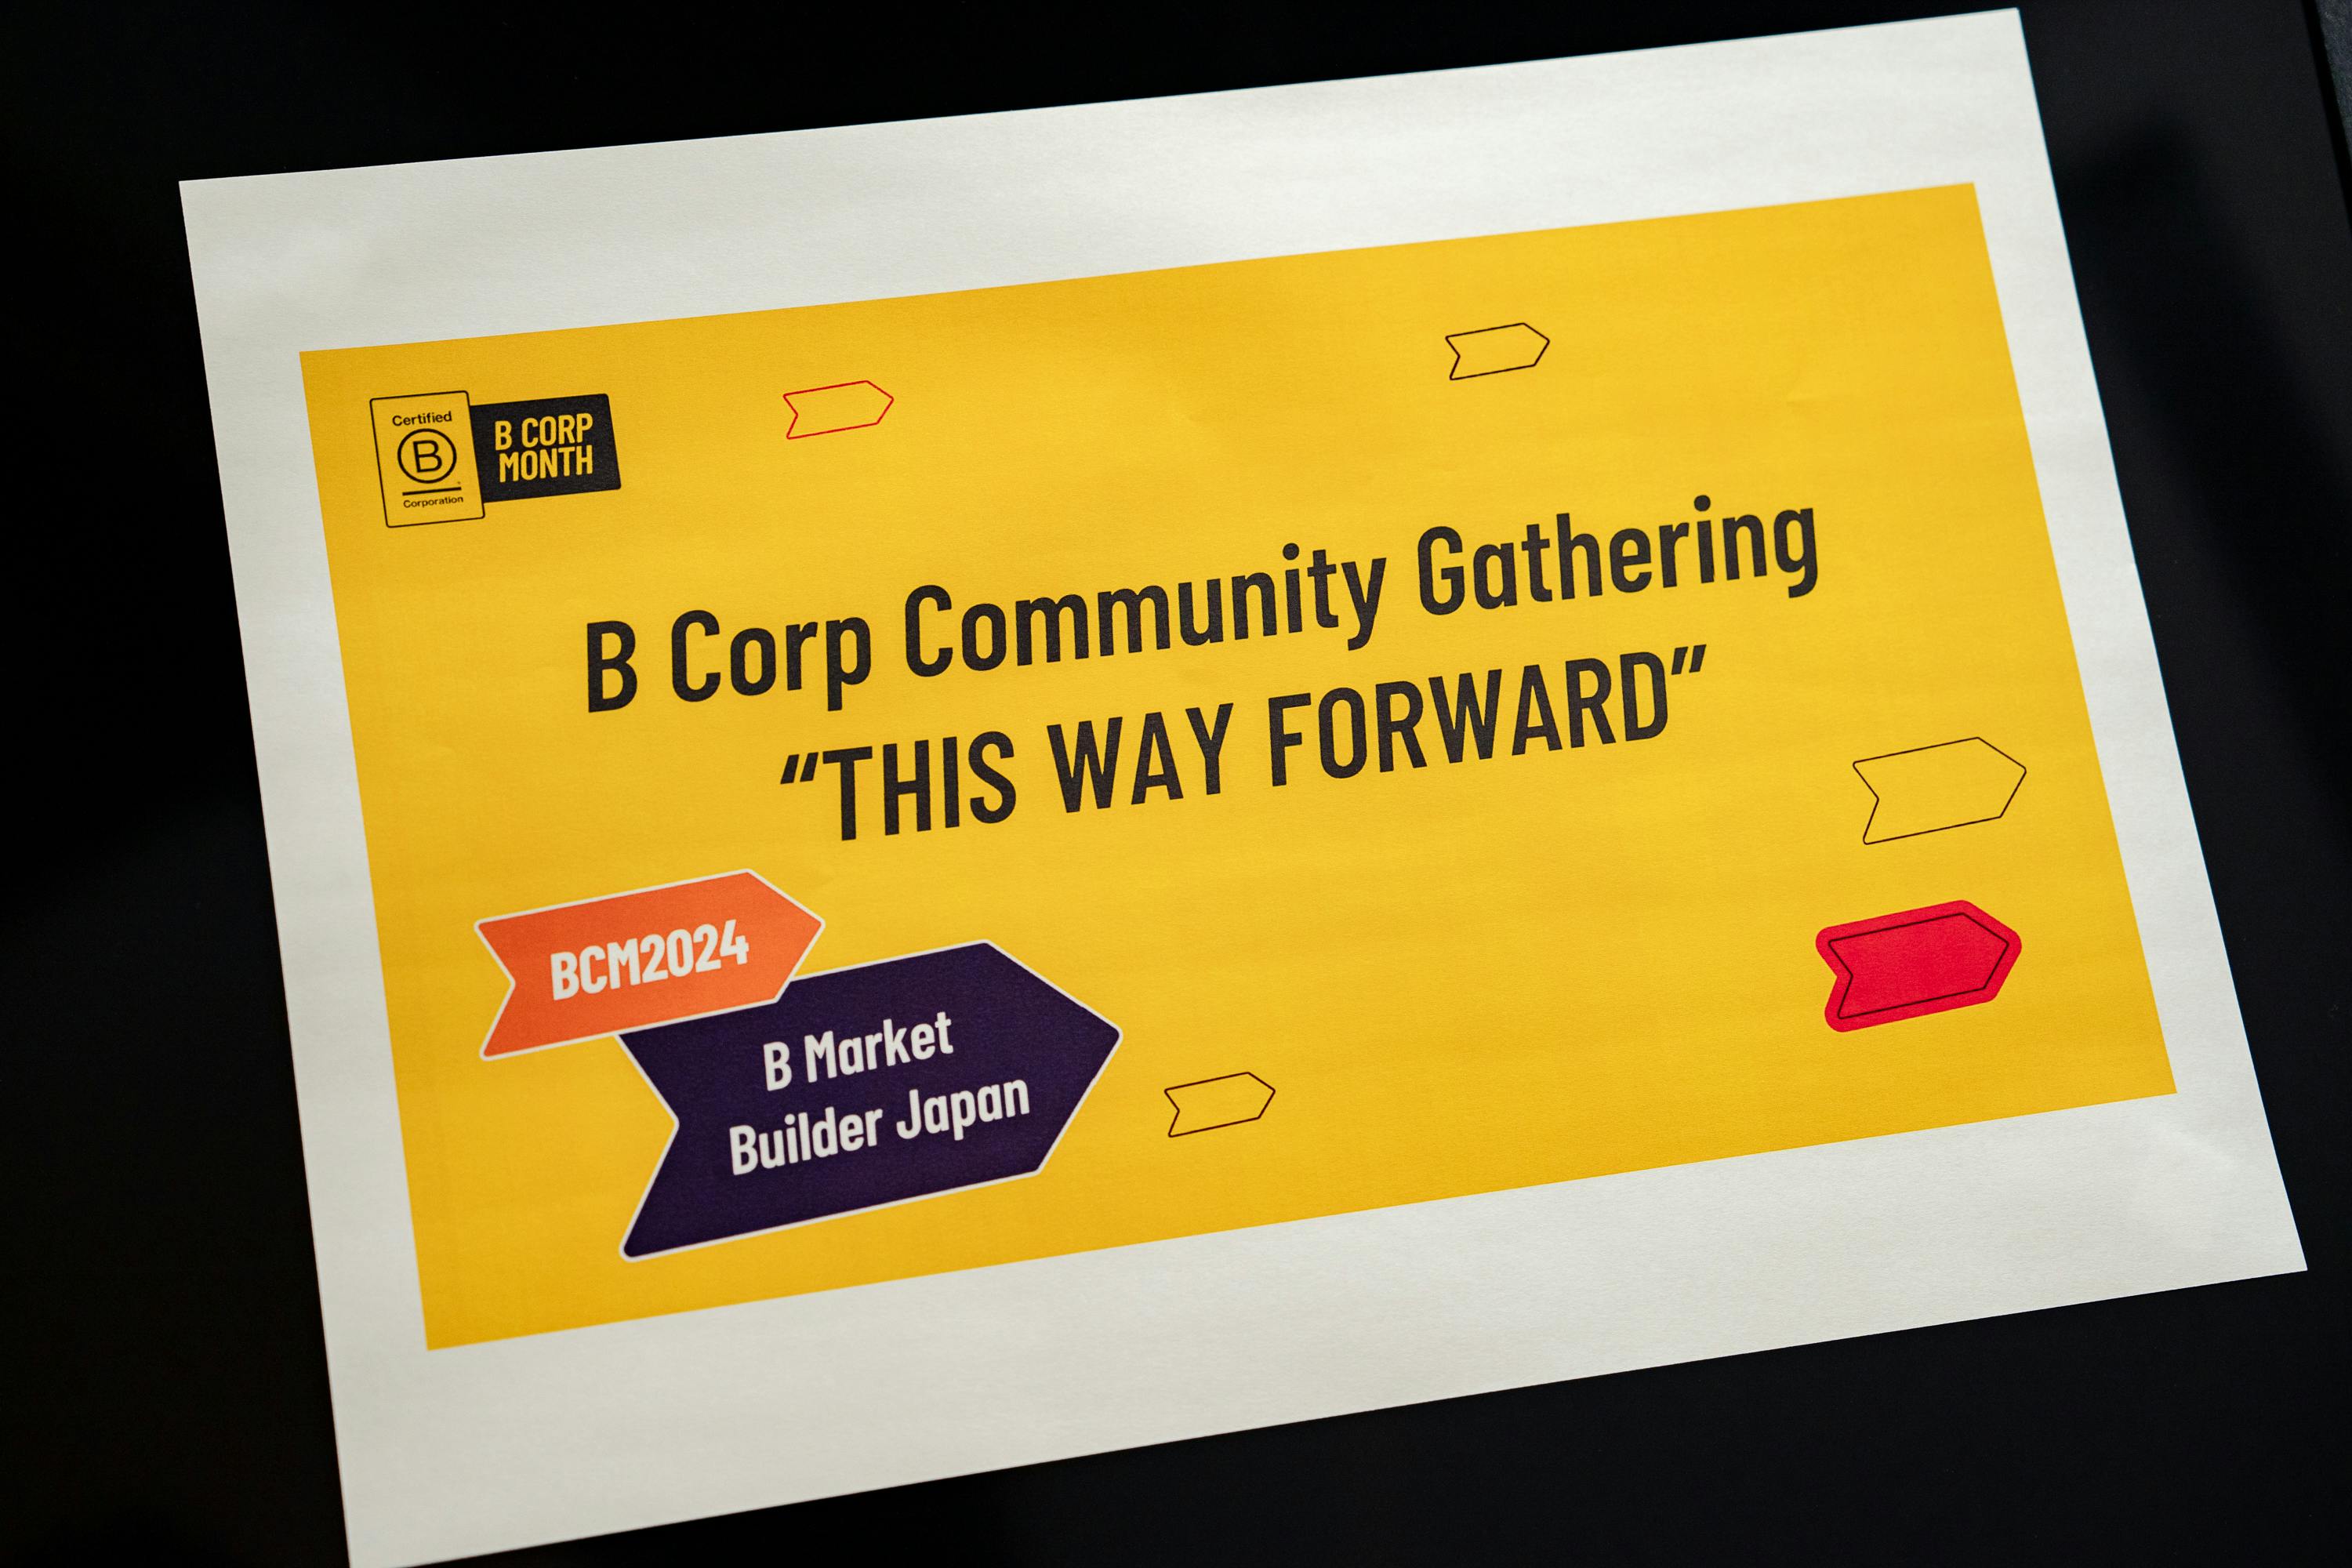 【参加レポート】B Corp Community Gathering に参加しました